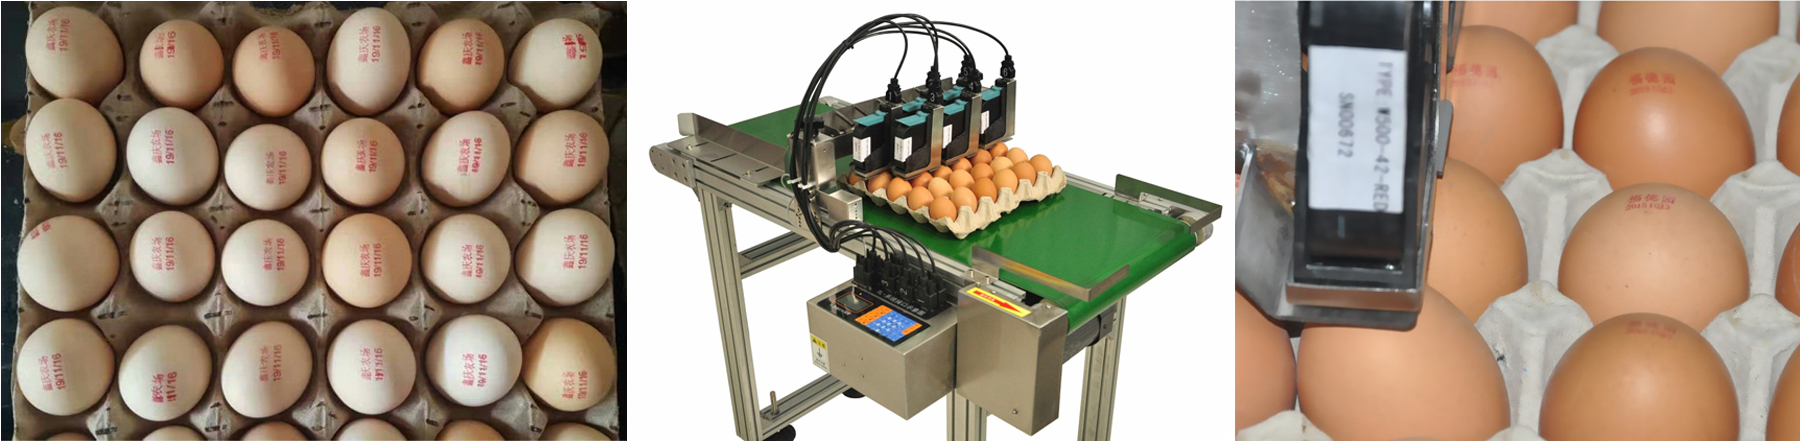 egg inkjet coding machine.jpg